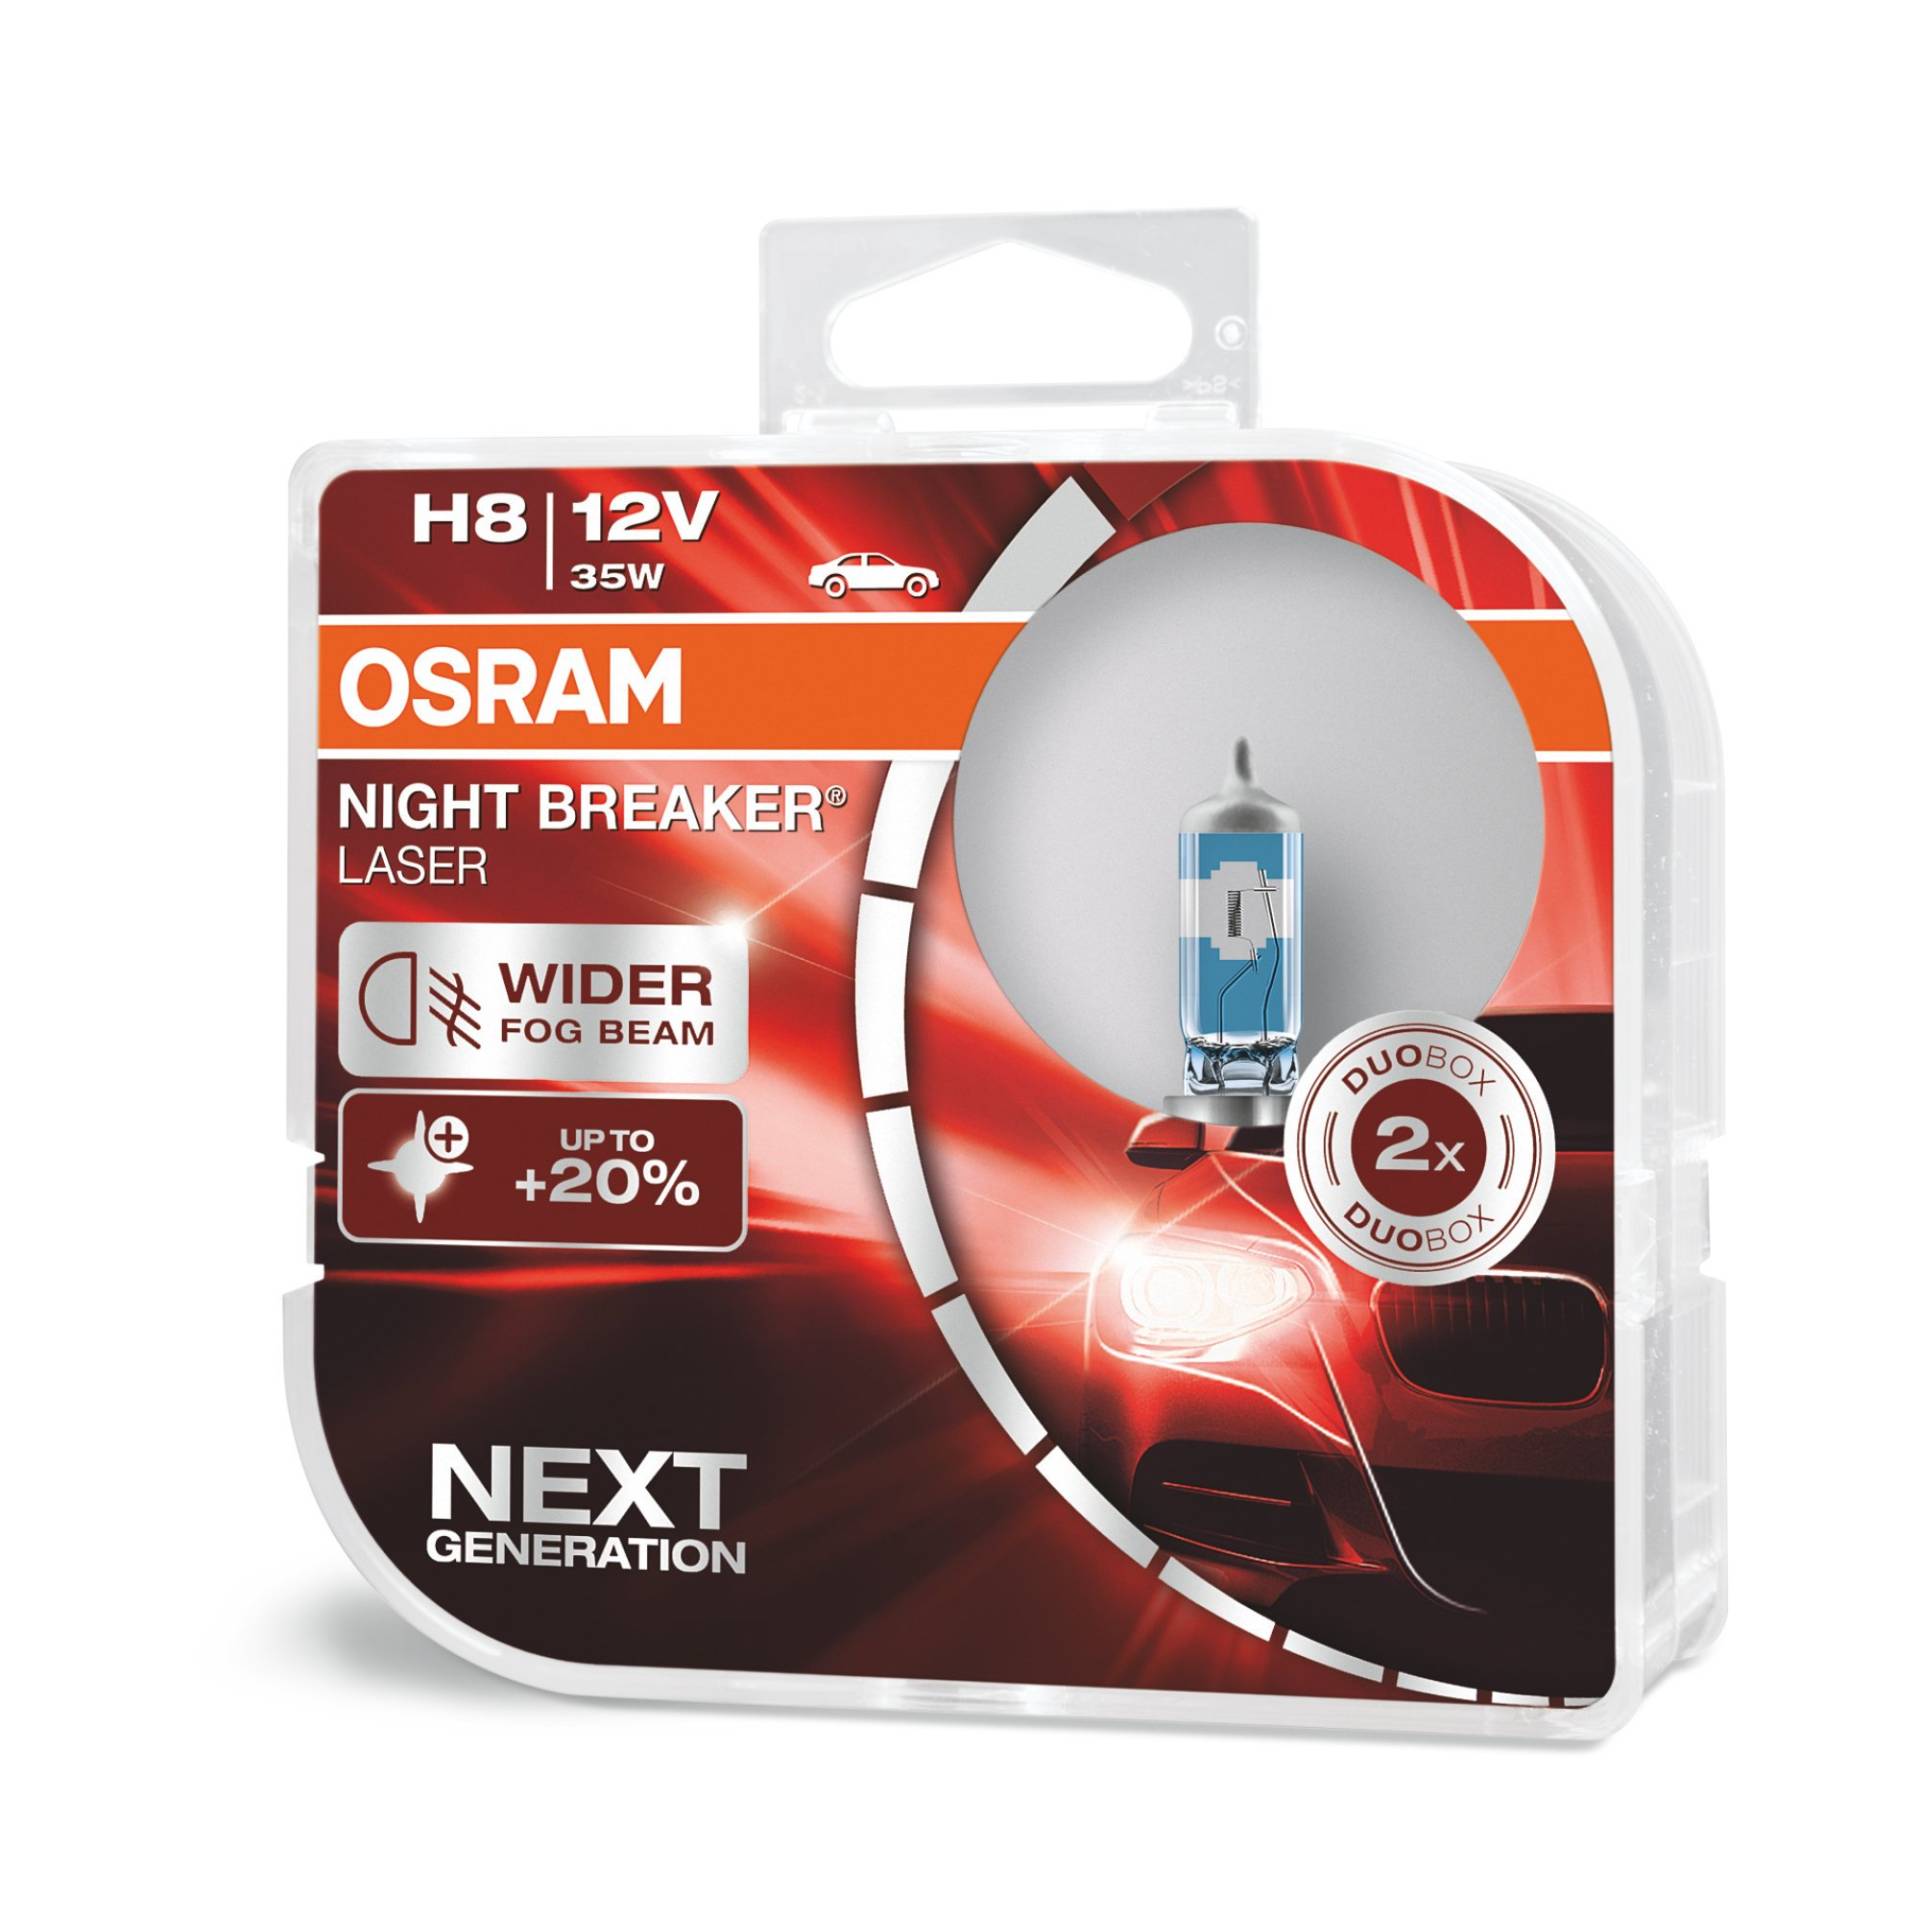 OSRAM NIGHT BREAKER LASER H8, +150% mehr Helligkeit, Halogen-Scheinwerferlampe, 64212NL-HCB, 12V PKW, Duo Box (2 Lampen) von Osram